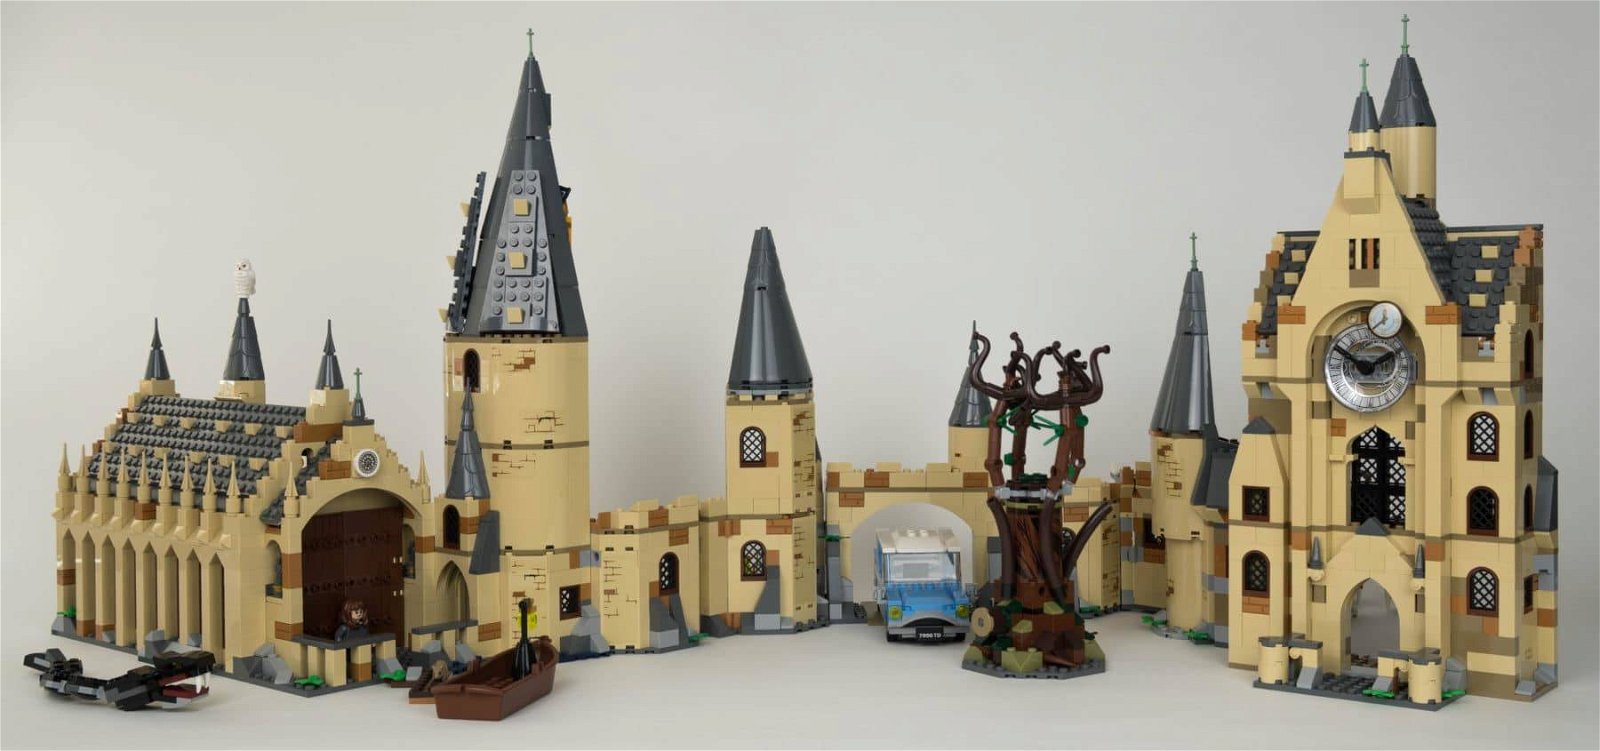 Immagine di LEGO Harry Potter | I migliori set per riprodurre la Scuola di Magia di Hogwarts